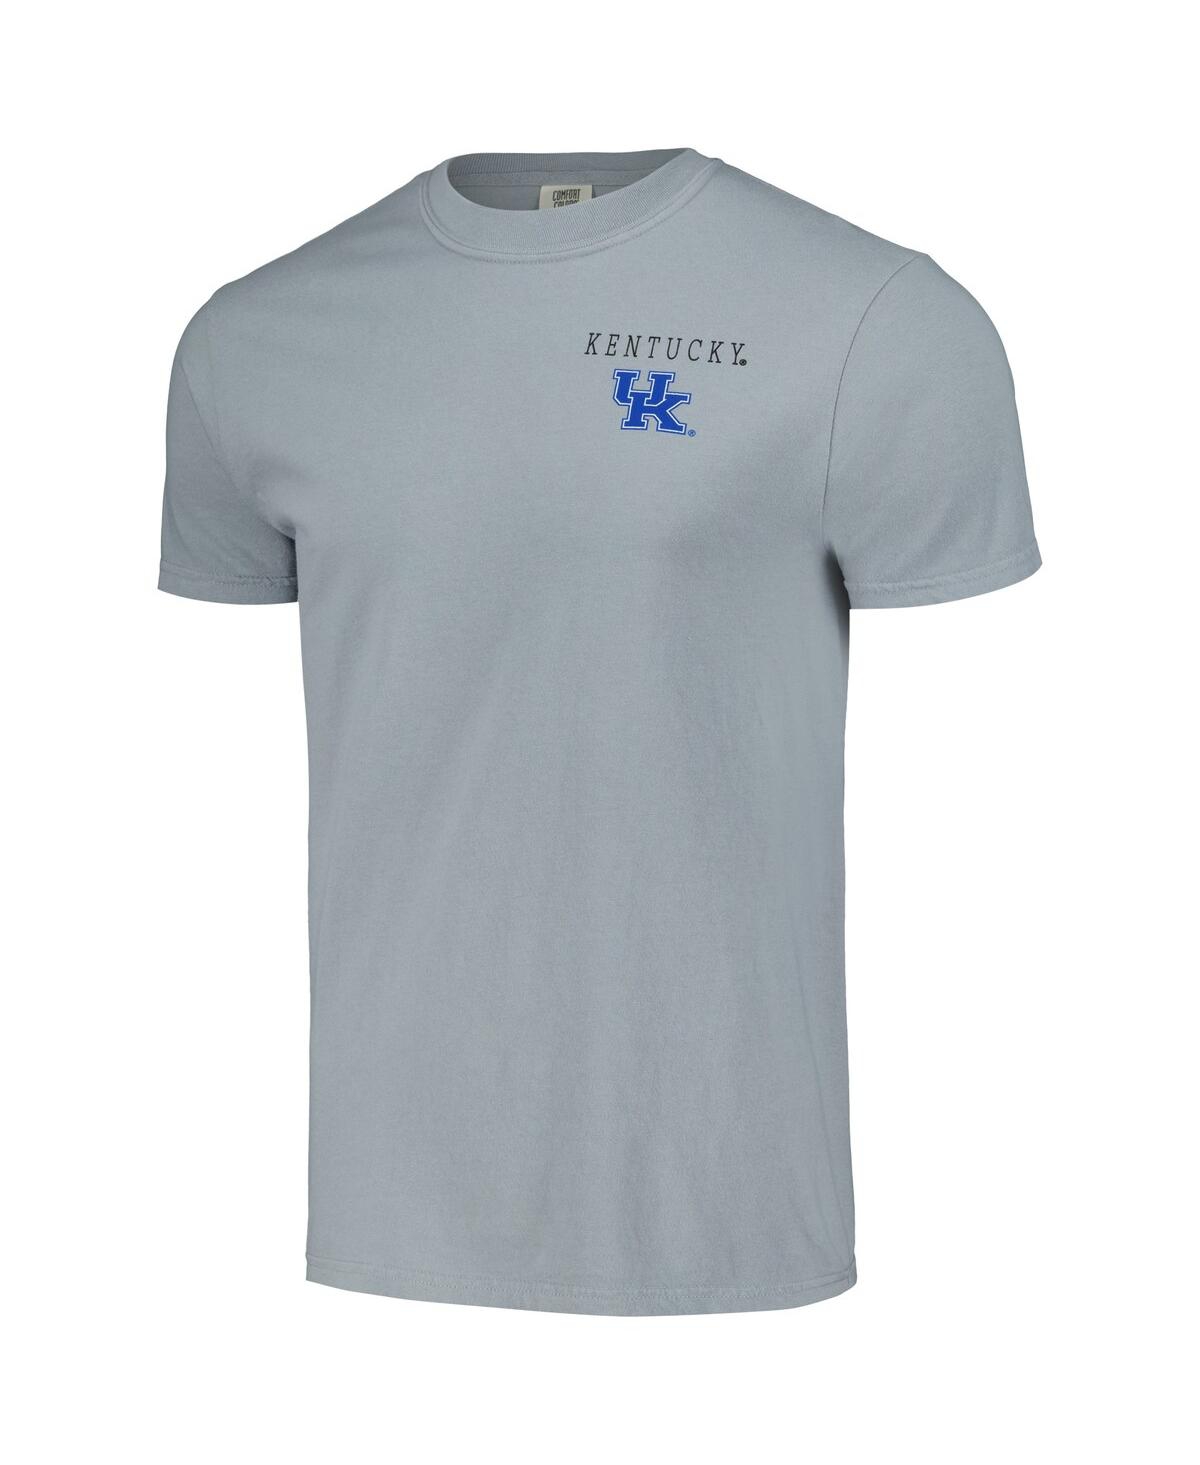 Shop Image One Men's Gray Kentucky Wildcats Campus Scene Comfort Colors T-shirt